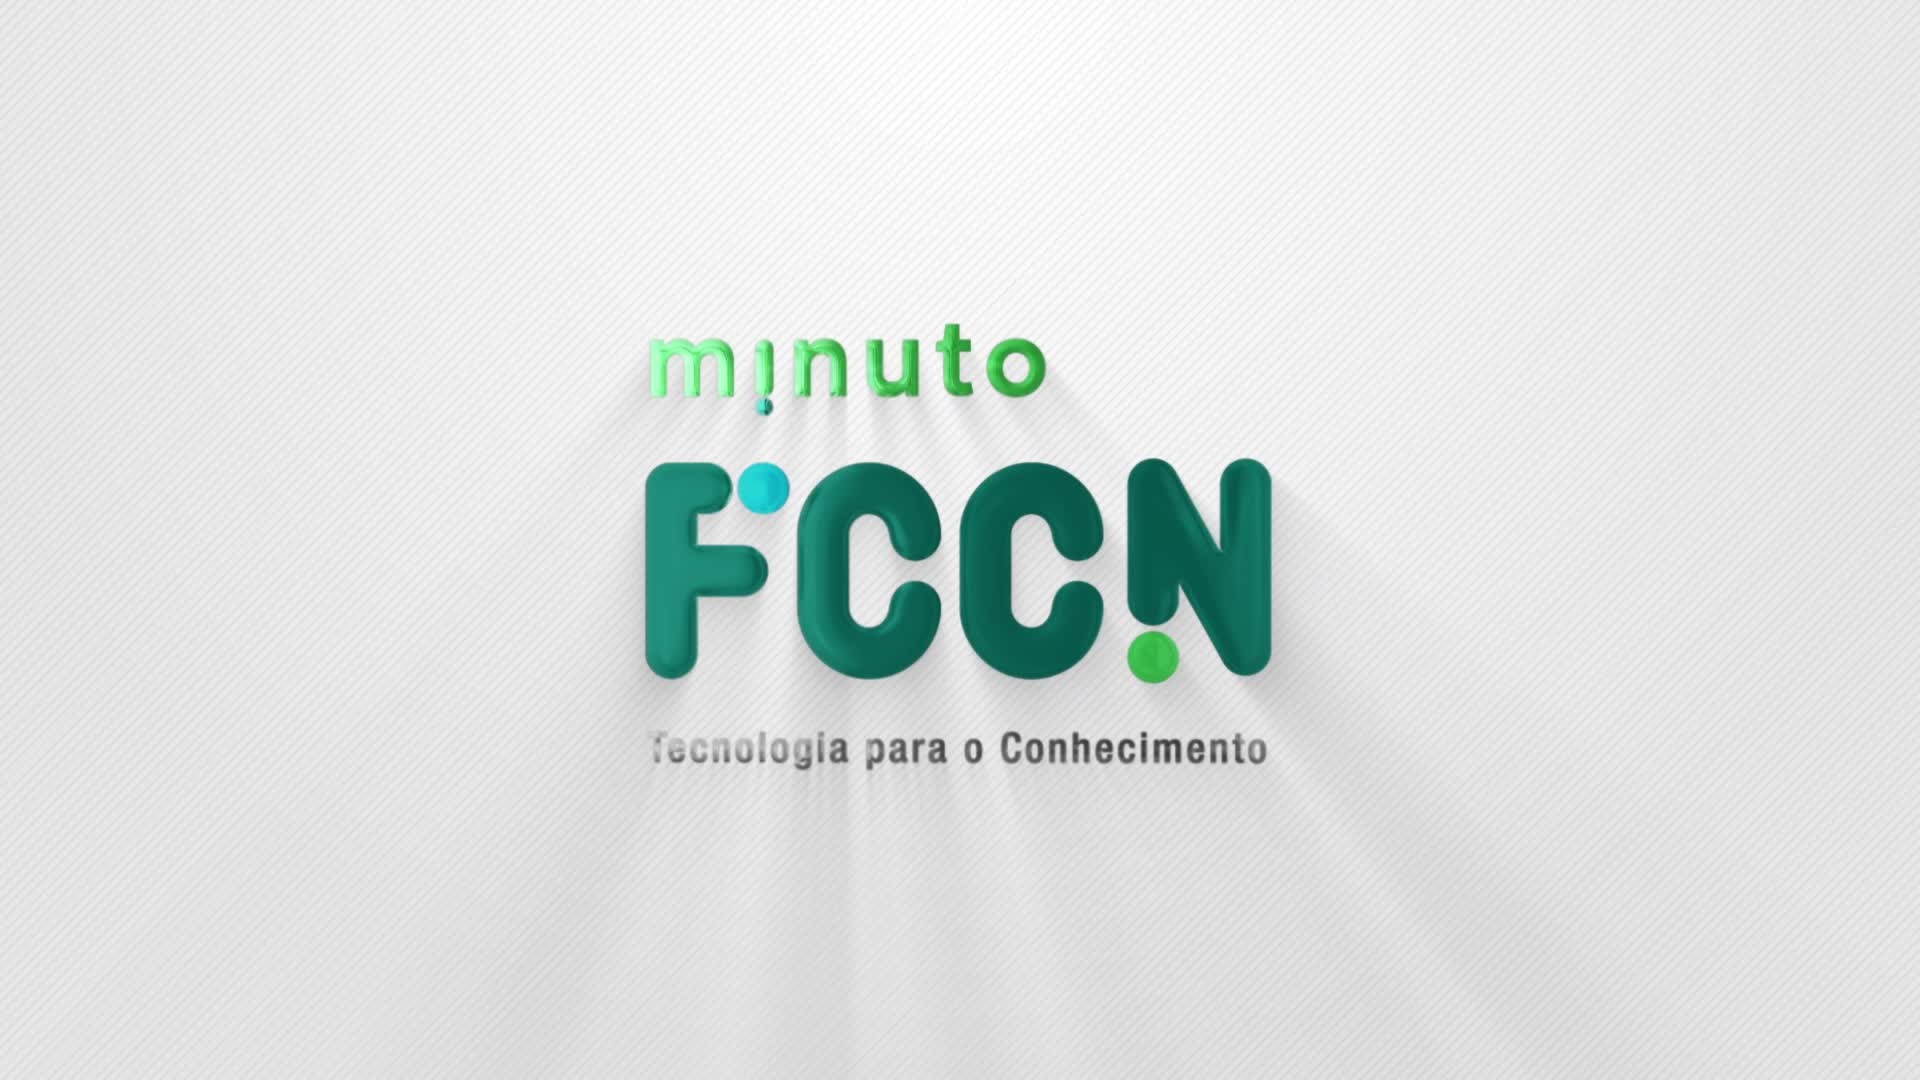  Minuto FCCN - Autenticação Federada